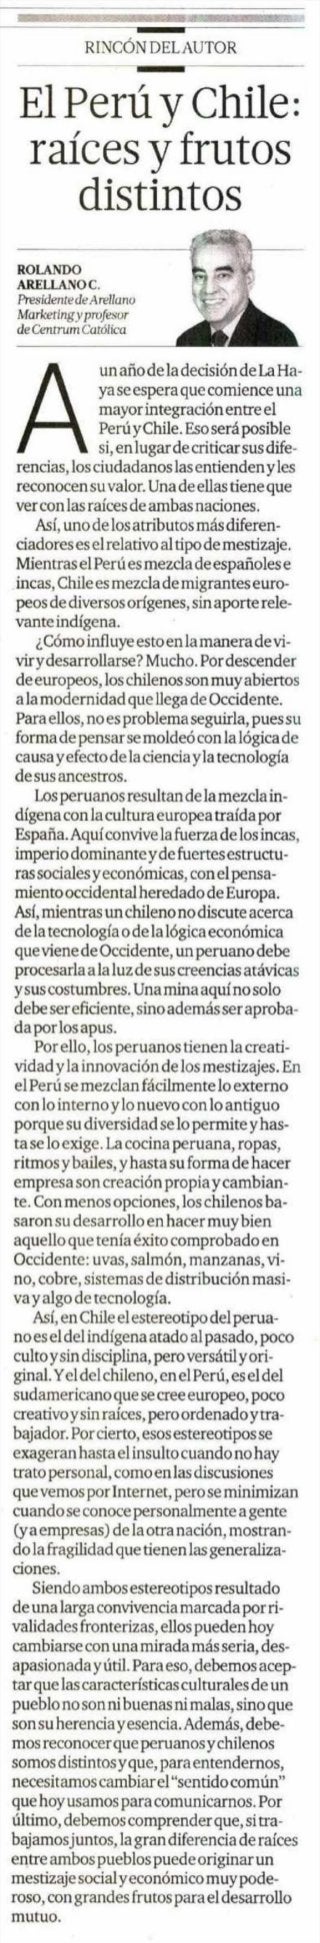 Publicado 02/02/2015 | Artículo Rolando Arellano | El Comercio | CENTRUM Católica